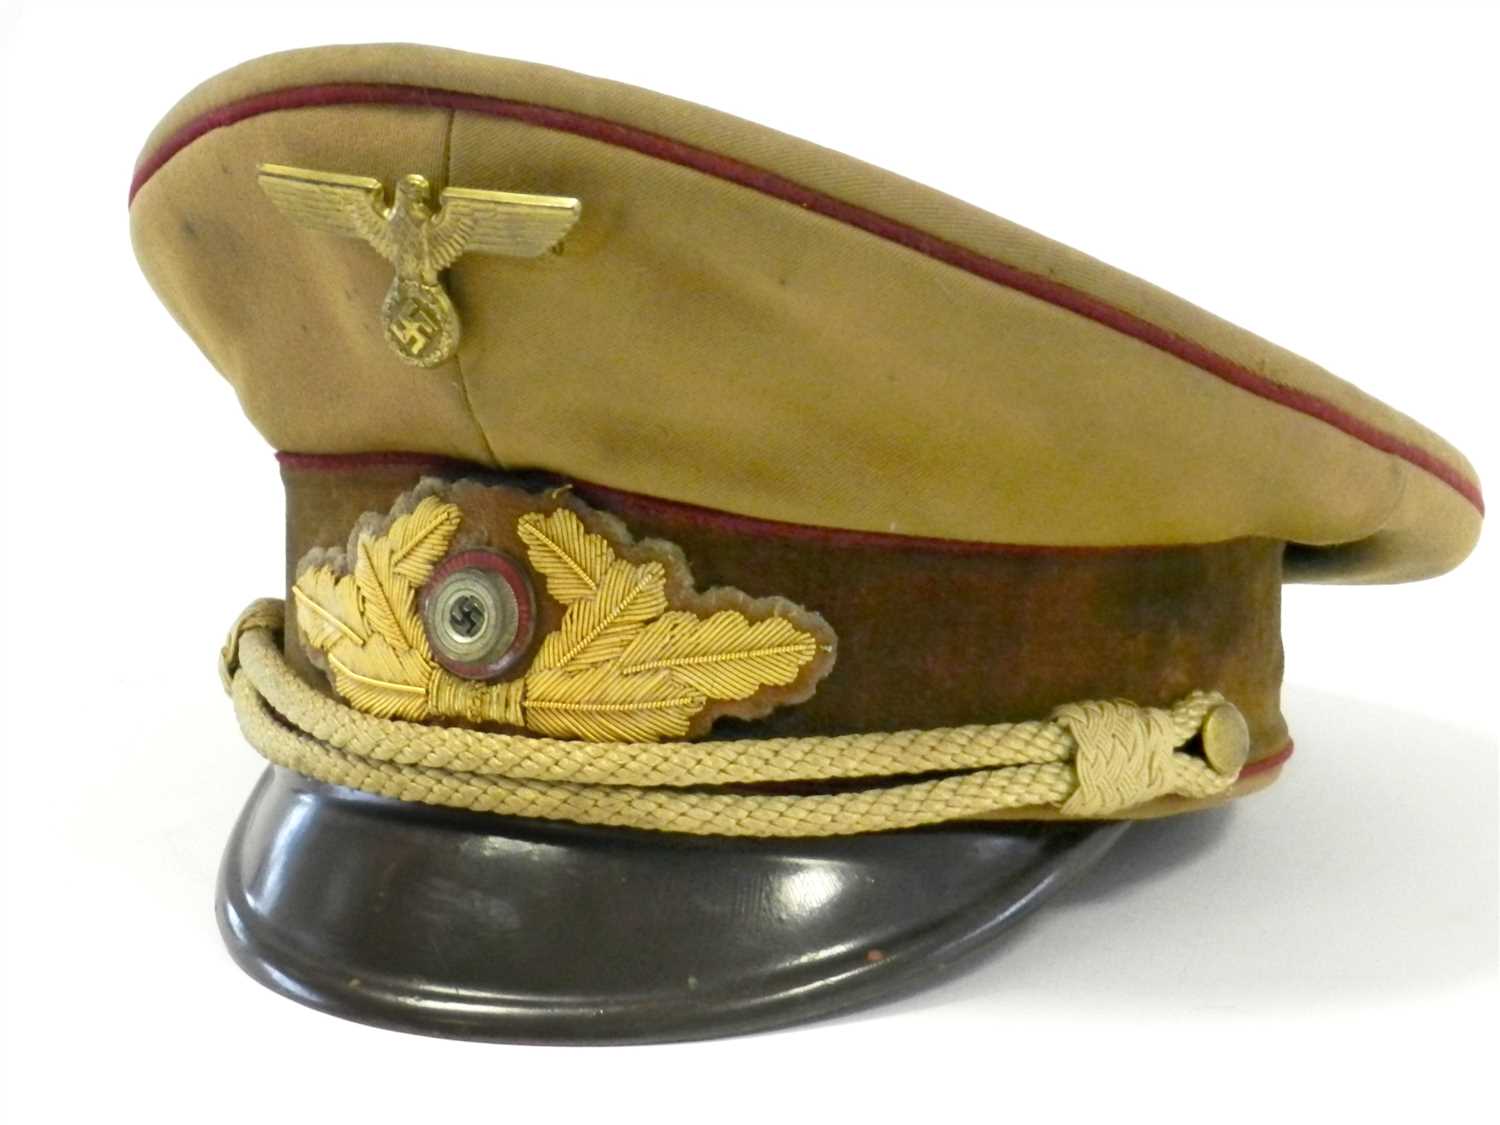 † An NSDAP German third Reich Gauleiter-level Political Leader's visor cap